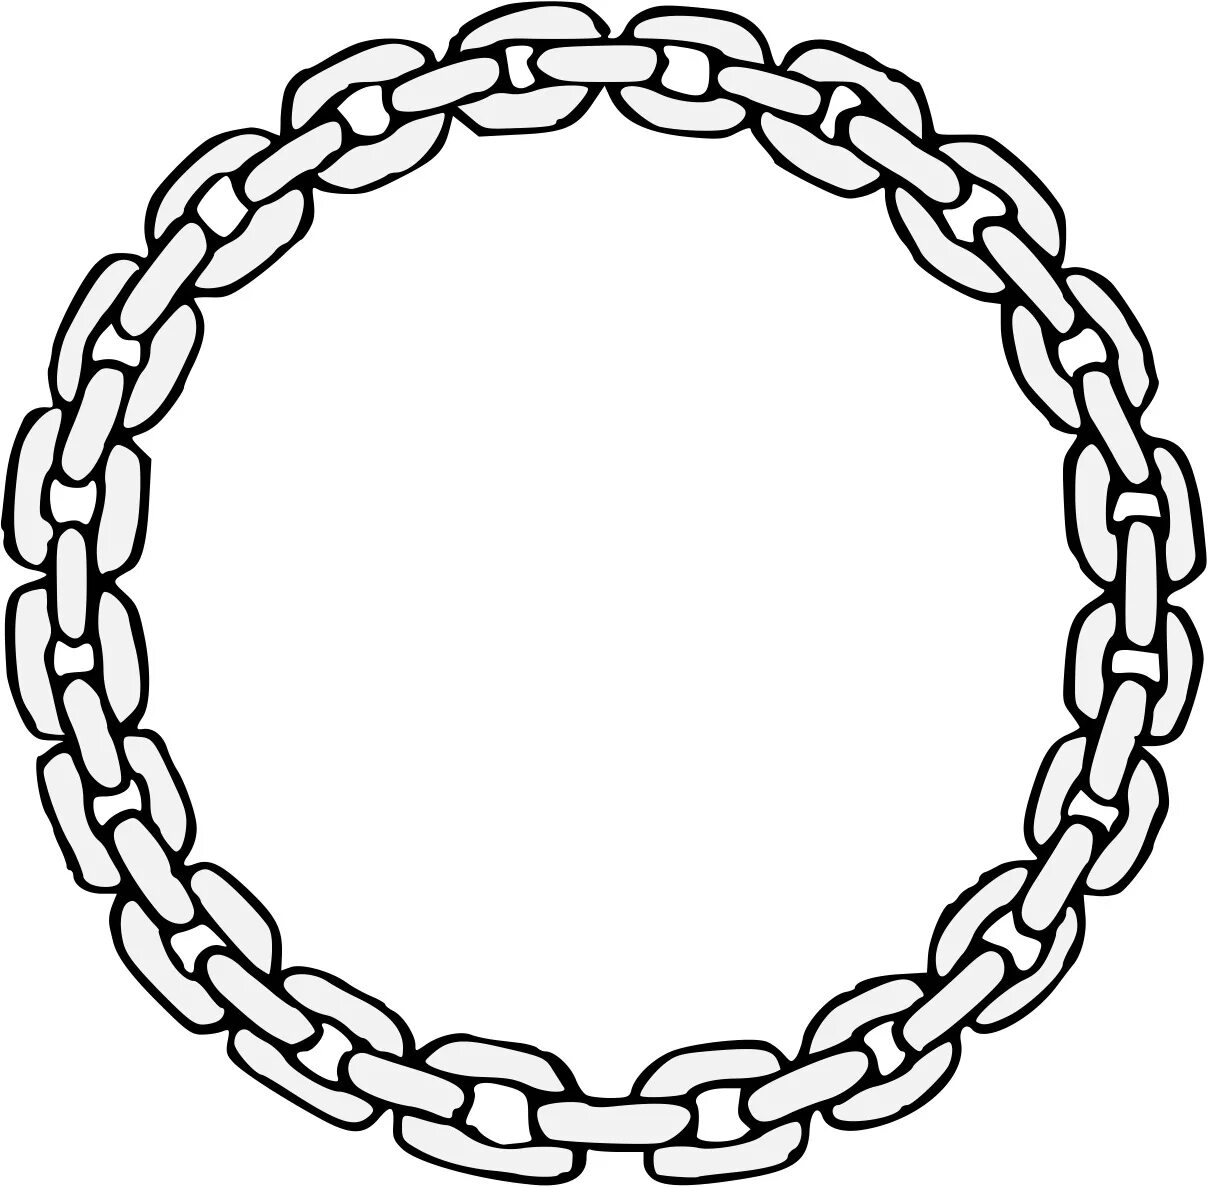 Chain #5